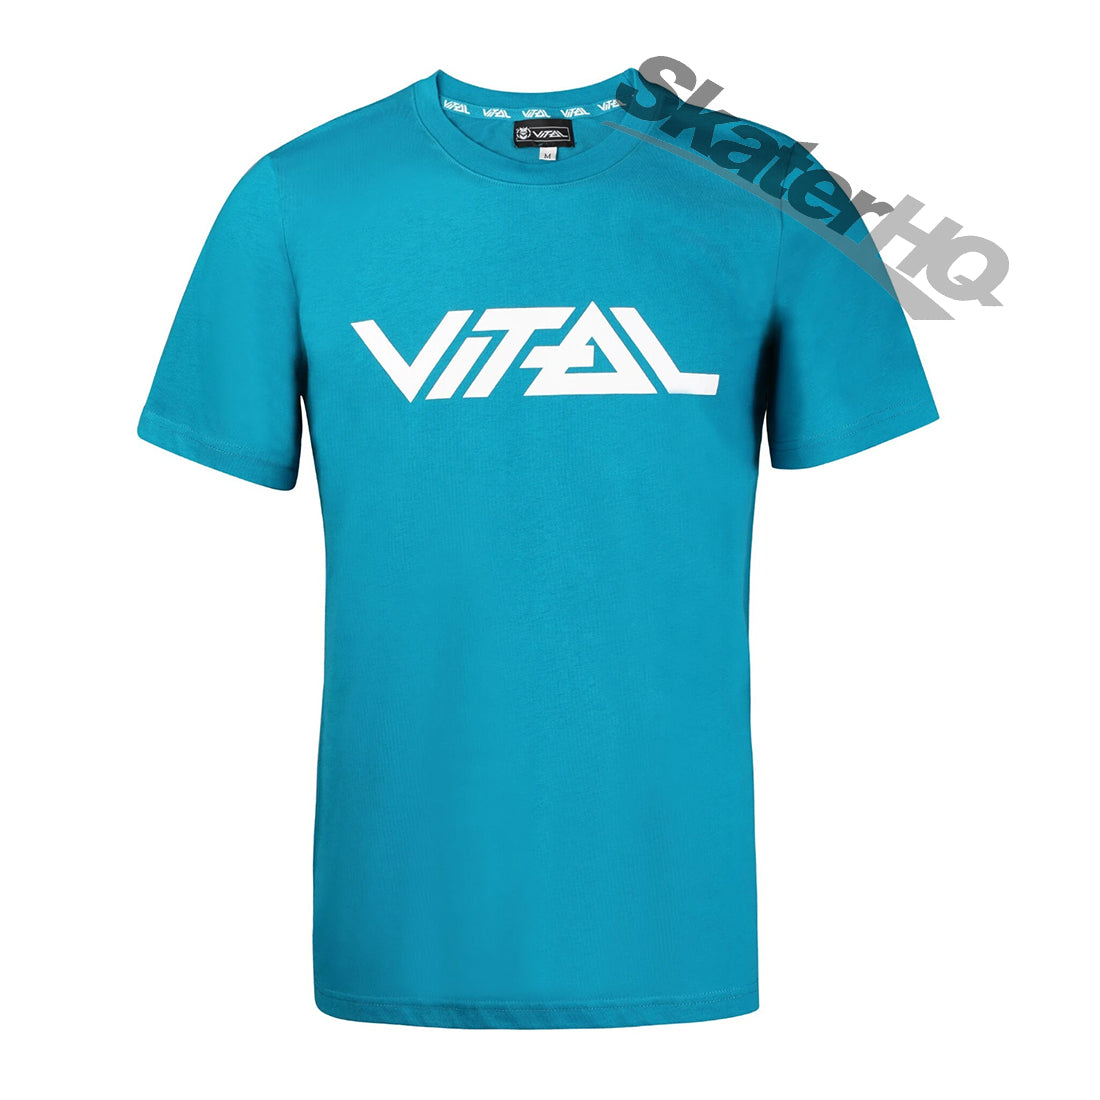 Vital Logo T-Shirt - Teal - Small Apparel Tshirts